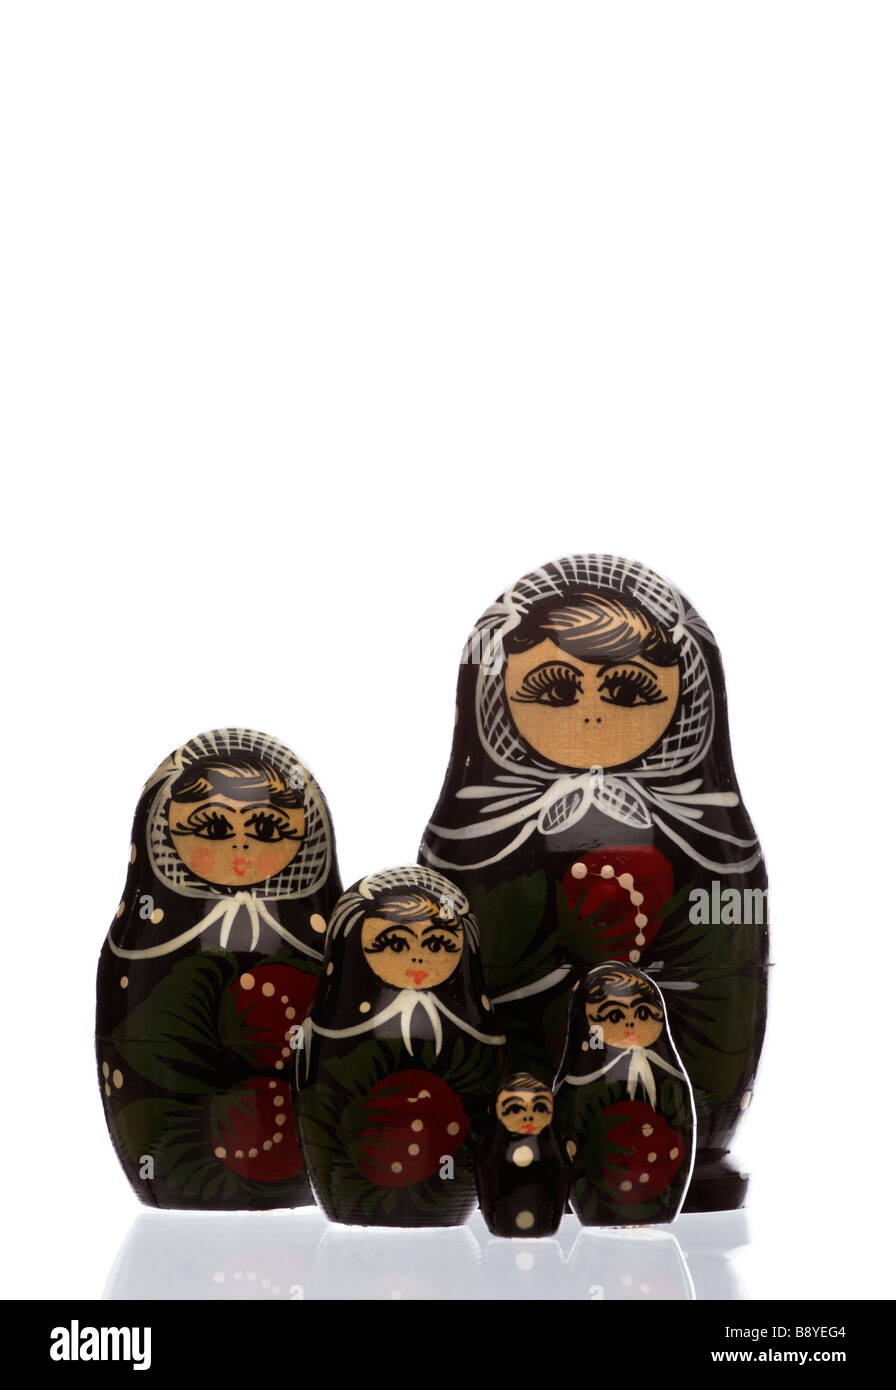 Babushka dolls. Stock Photo